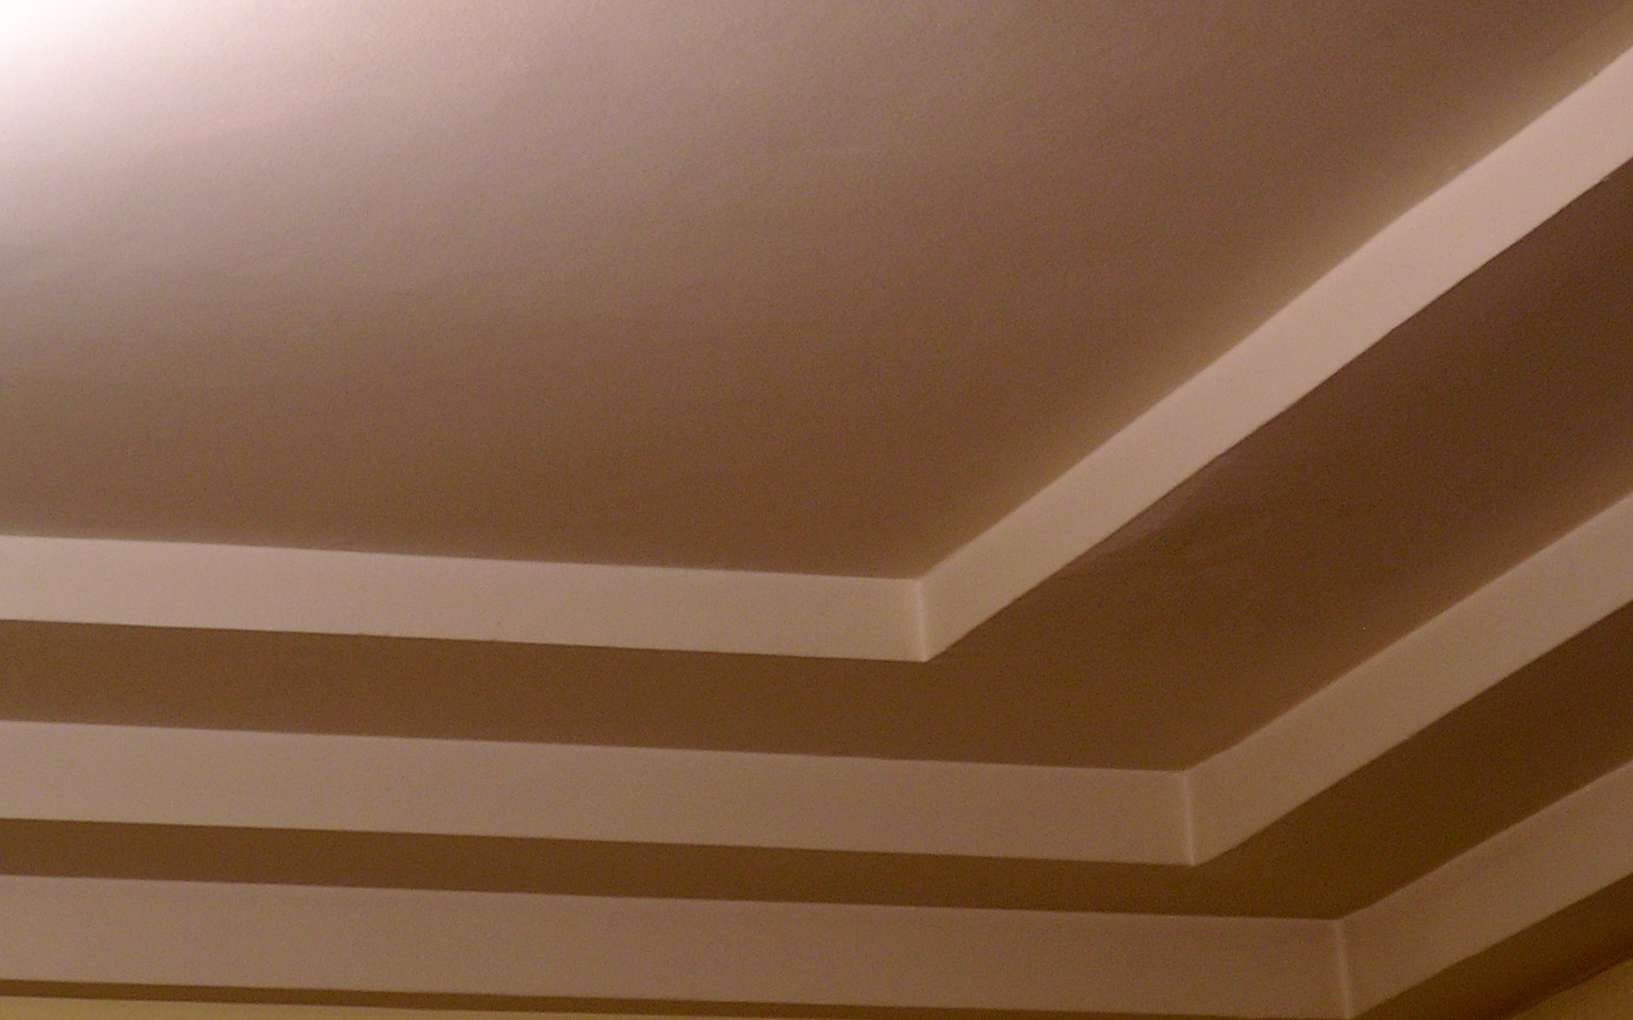 Le listel est une moulure qui apporte du relief, comme ici au plafond. © Môsieur J., CC BY-SA 2.0, Flickr